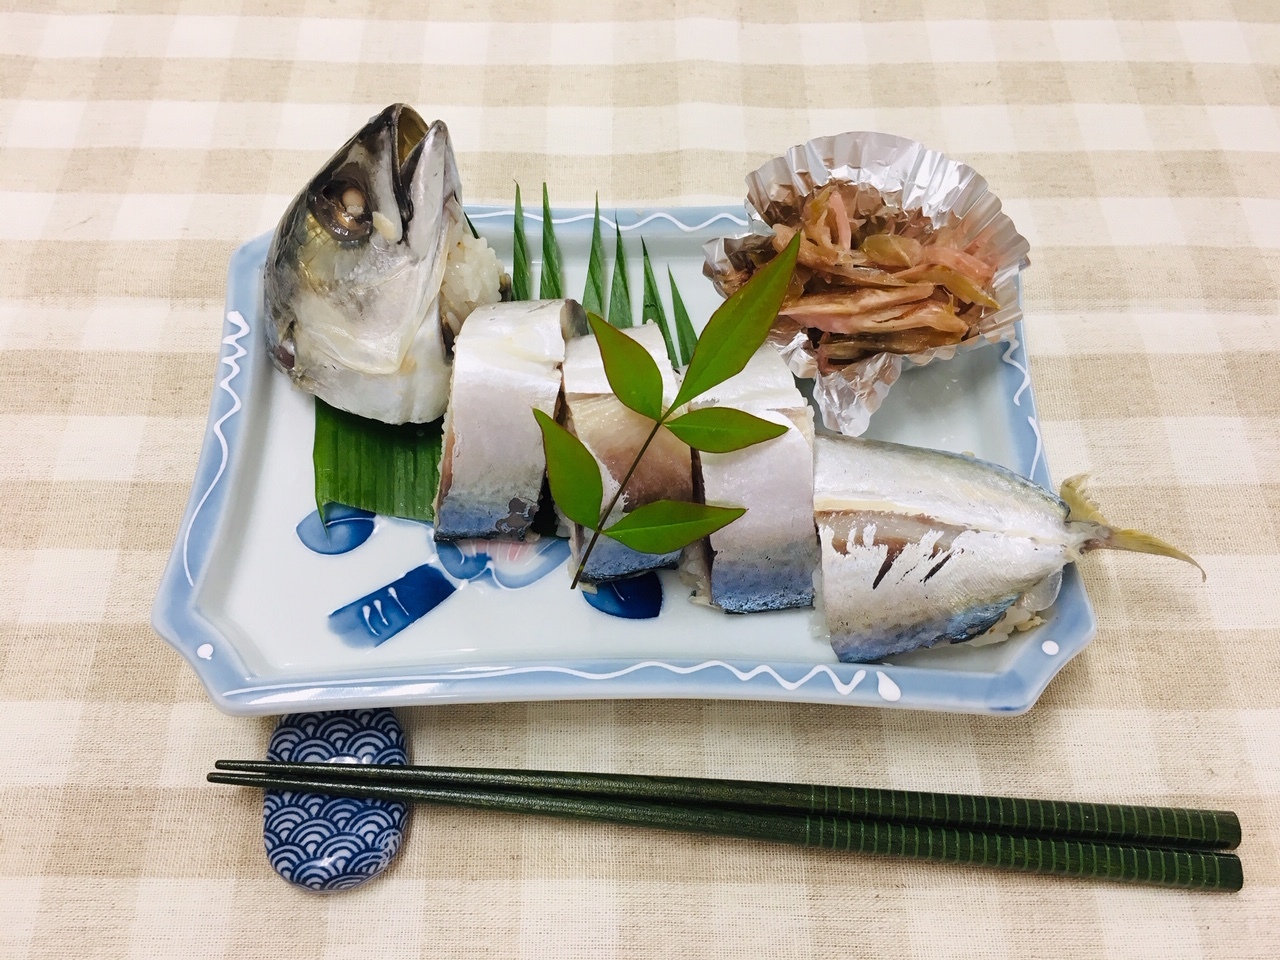 尾頭付きの鯖寿司が盛り付けられている写真